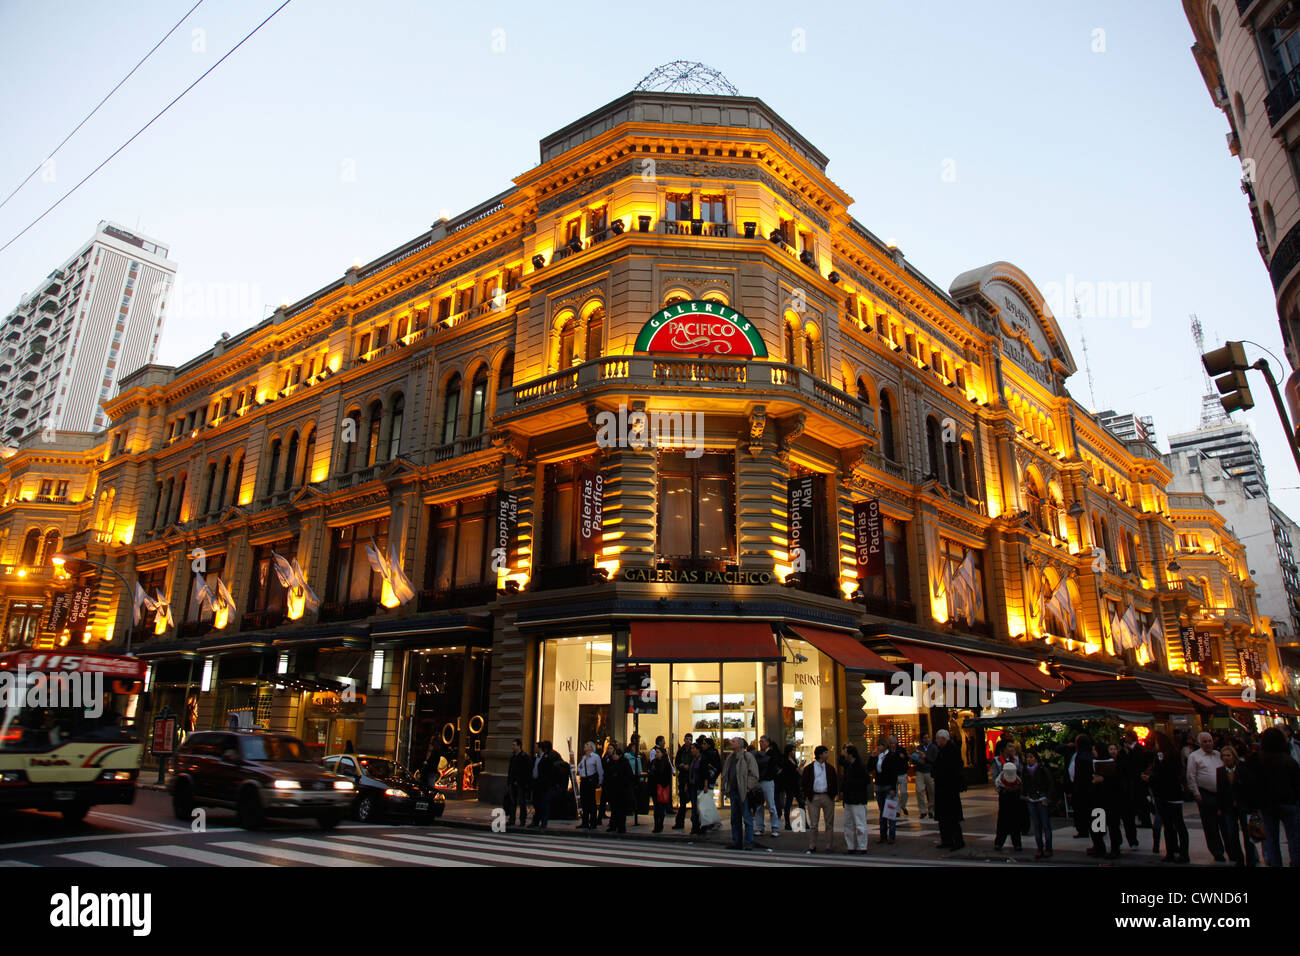 Galerias Pacifico Einkaufszentrum auf den Aufbau von Florida Street, Buenos Aires, Argentinien. Stockfoto